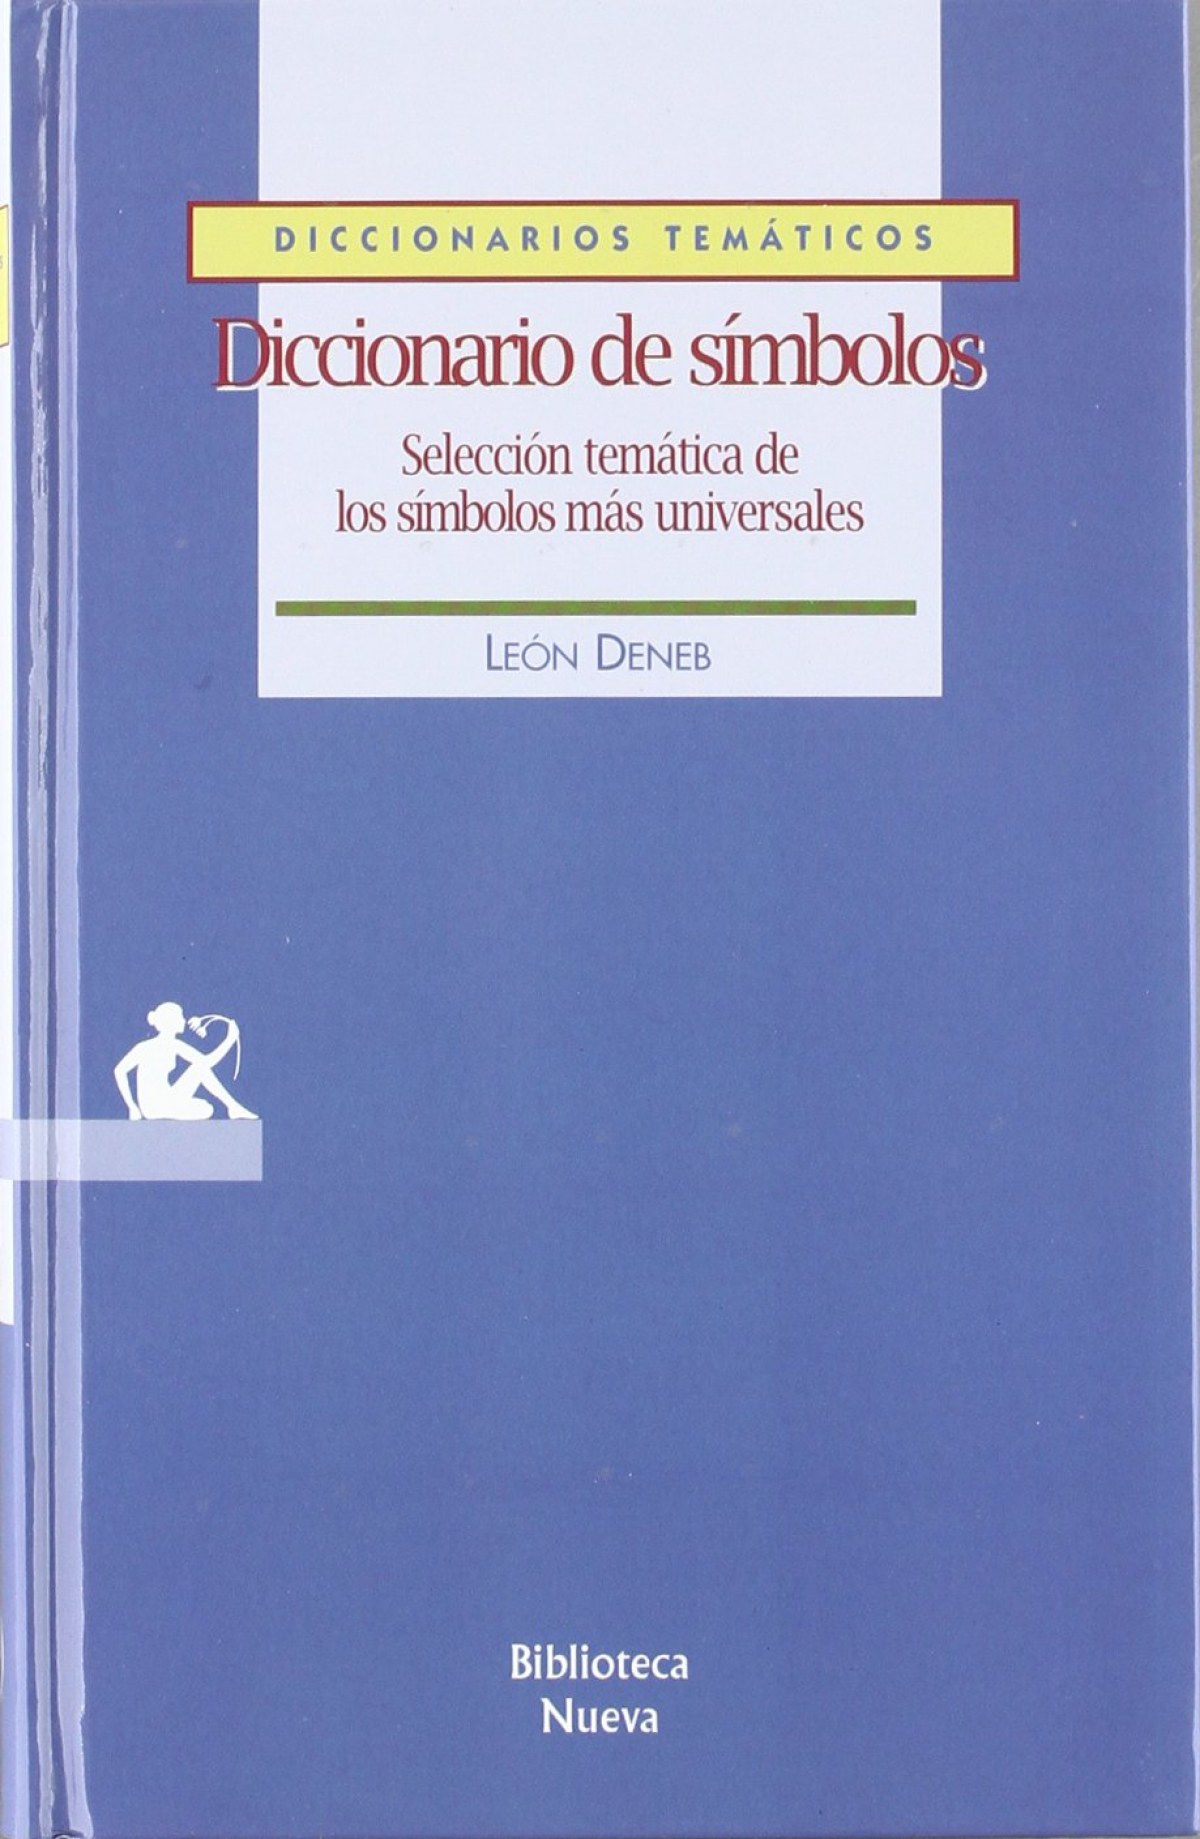 Diccionario de simbolos - Deneb, Leon